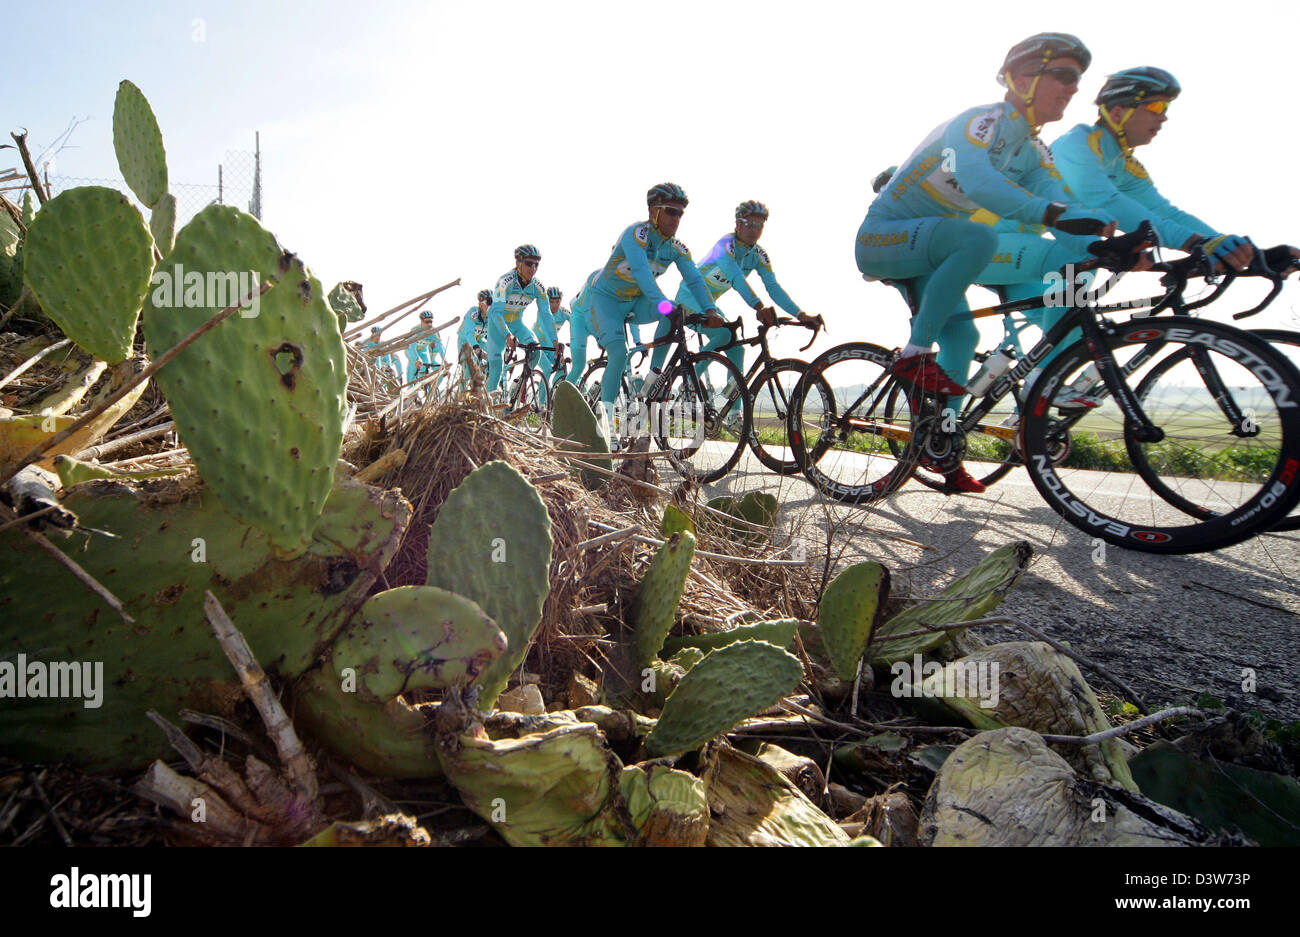 Les avantages du vélo de l'équipe Astana photographié à la formation en Montuiri, Espagne, vendredi 12 janvier 2007. L'équipe se prépare pour la nouvelle saison à la la belle île des Baléares Mallorca. Photo : Gero Breloer Banque D'Images